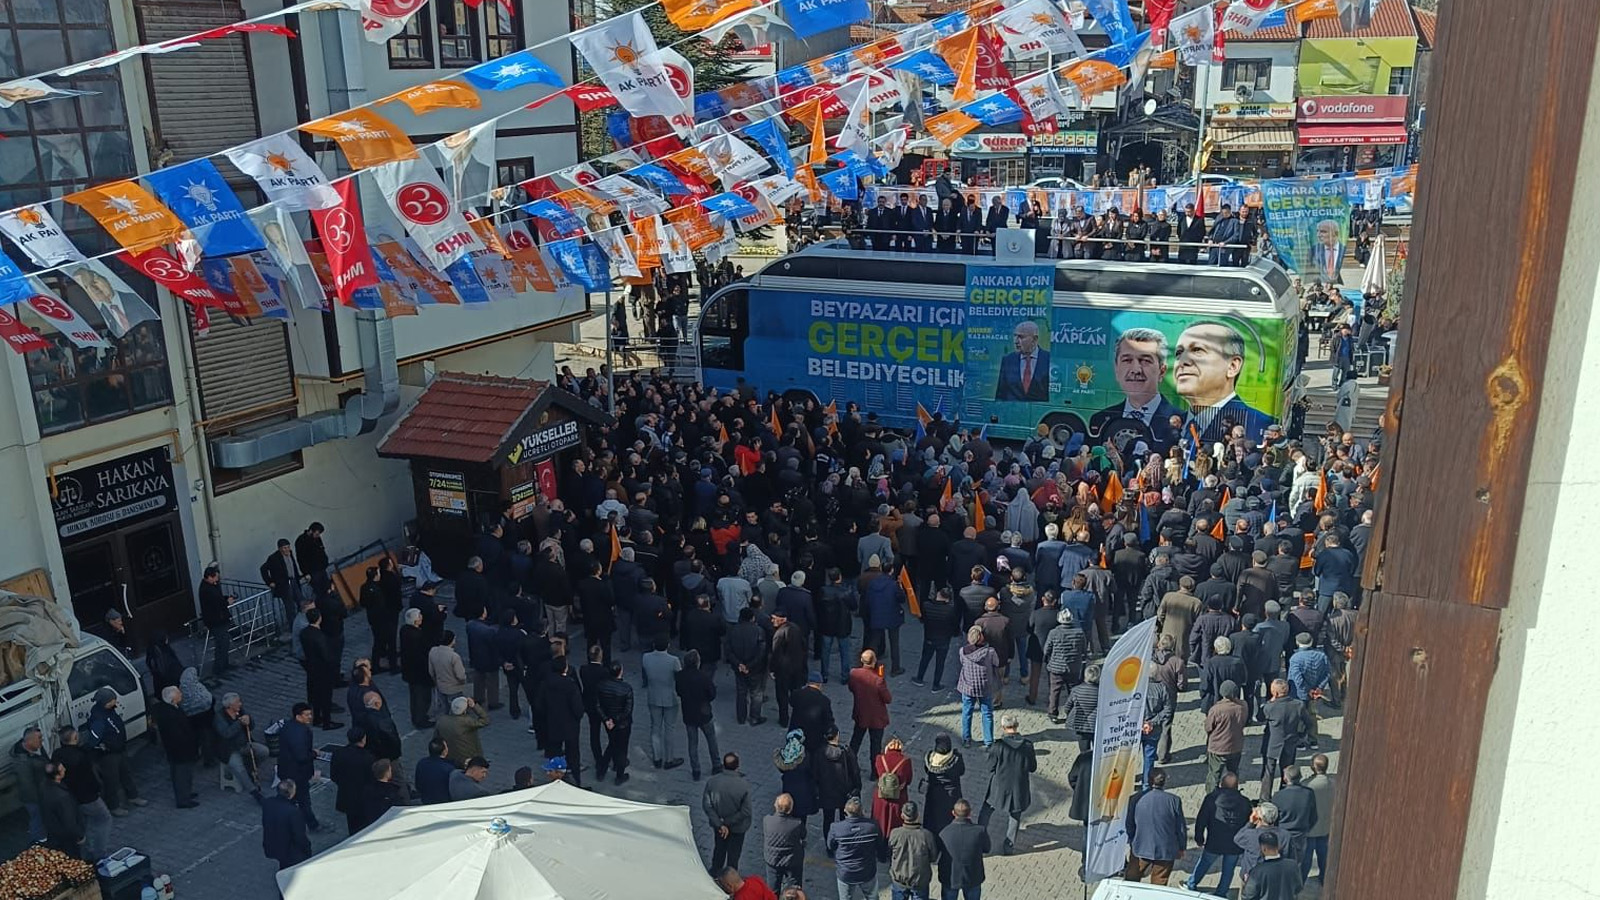 AKP'li Altınok'un Beypazarı mitingine ilgi gösterilmedi: Miting alanı boş kaldı